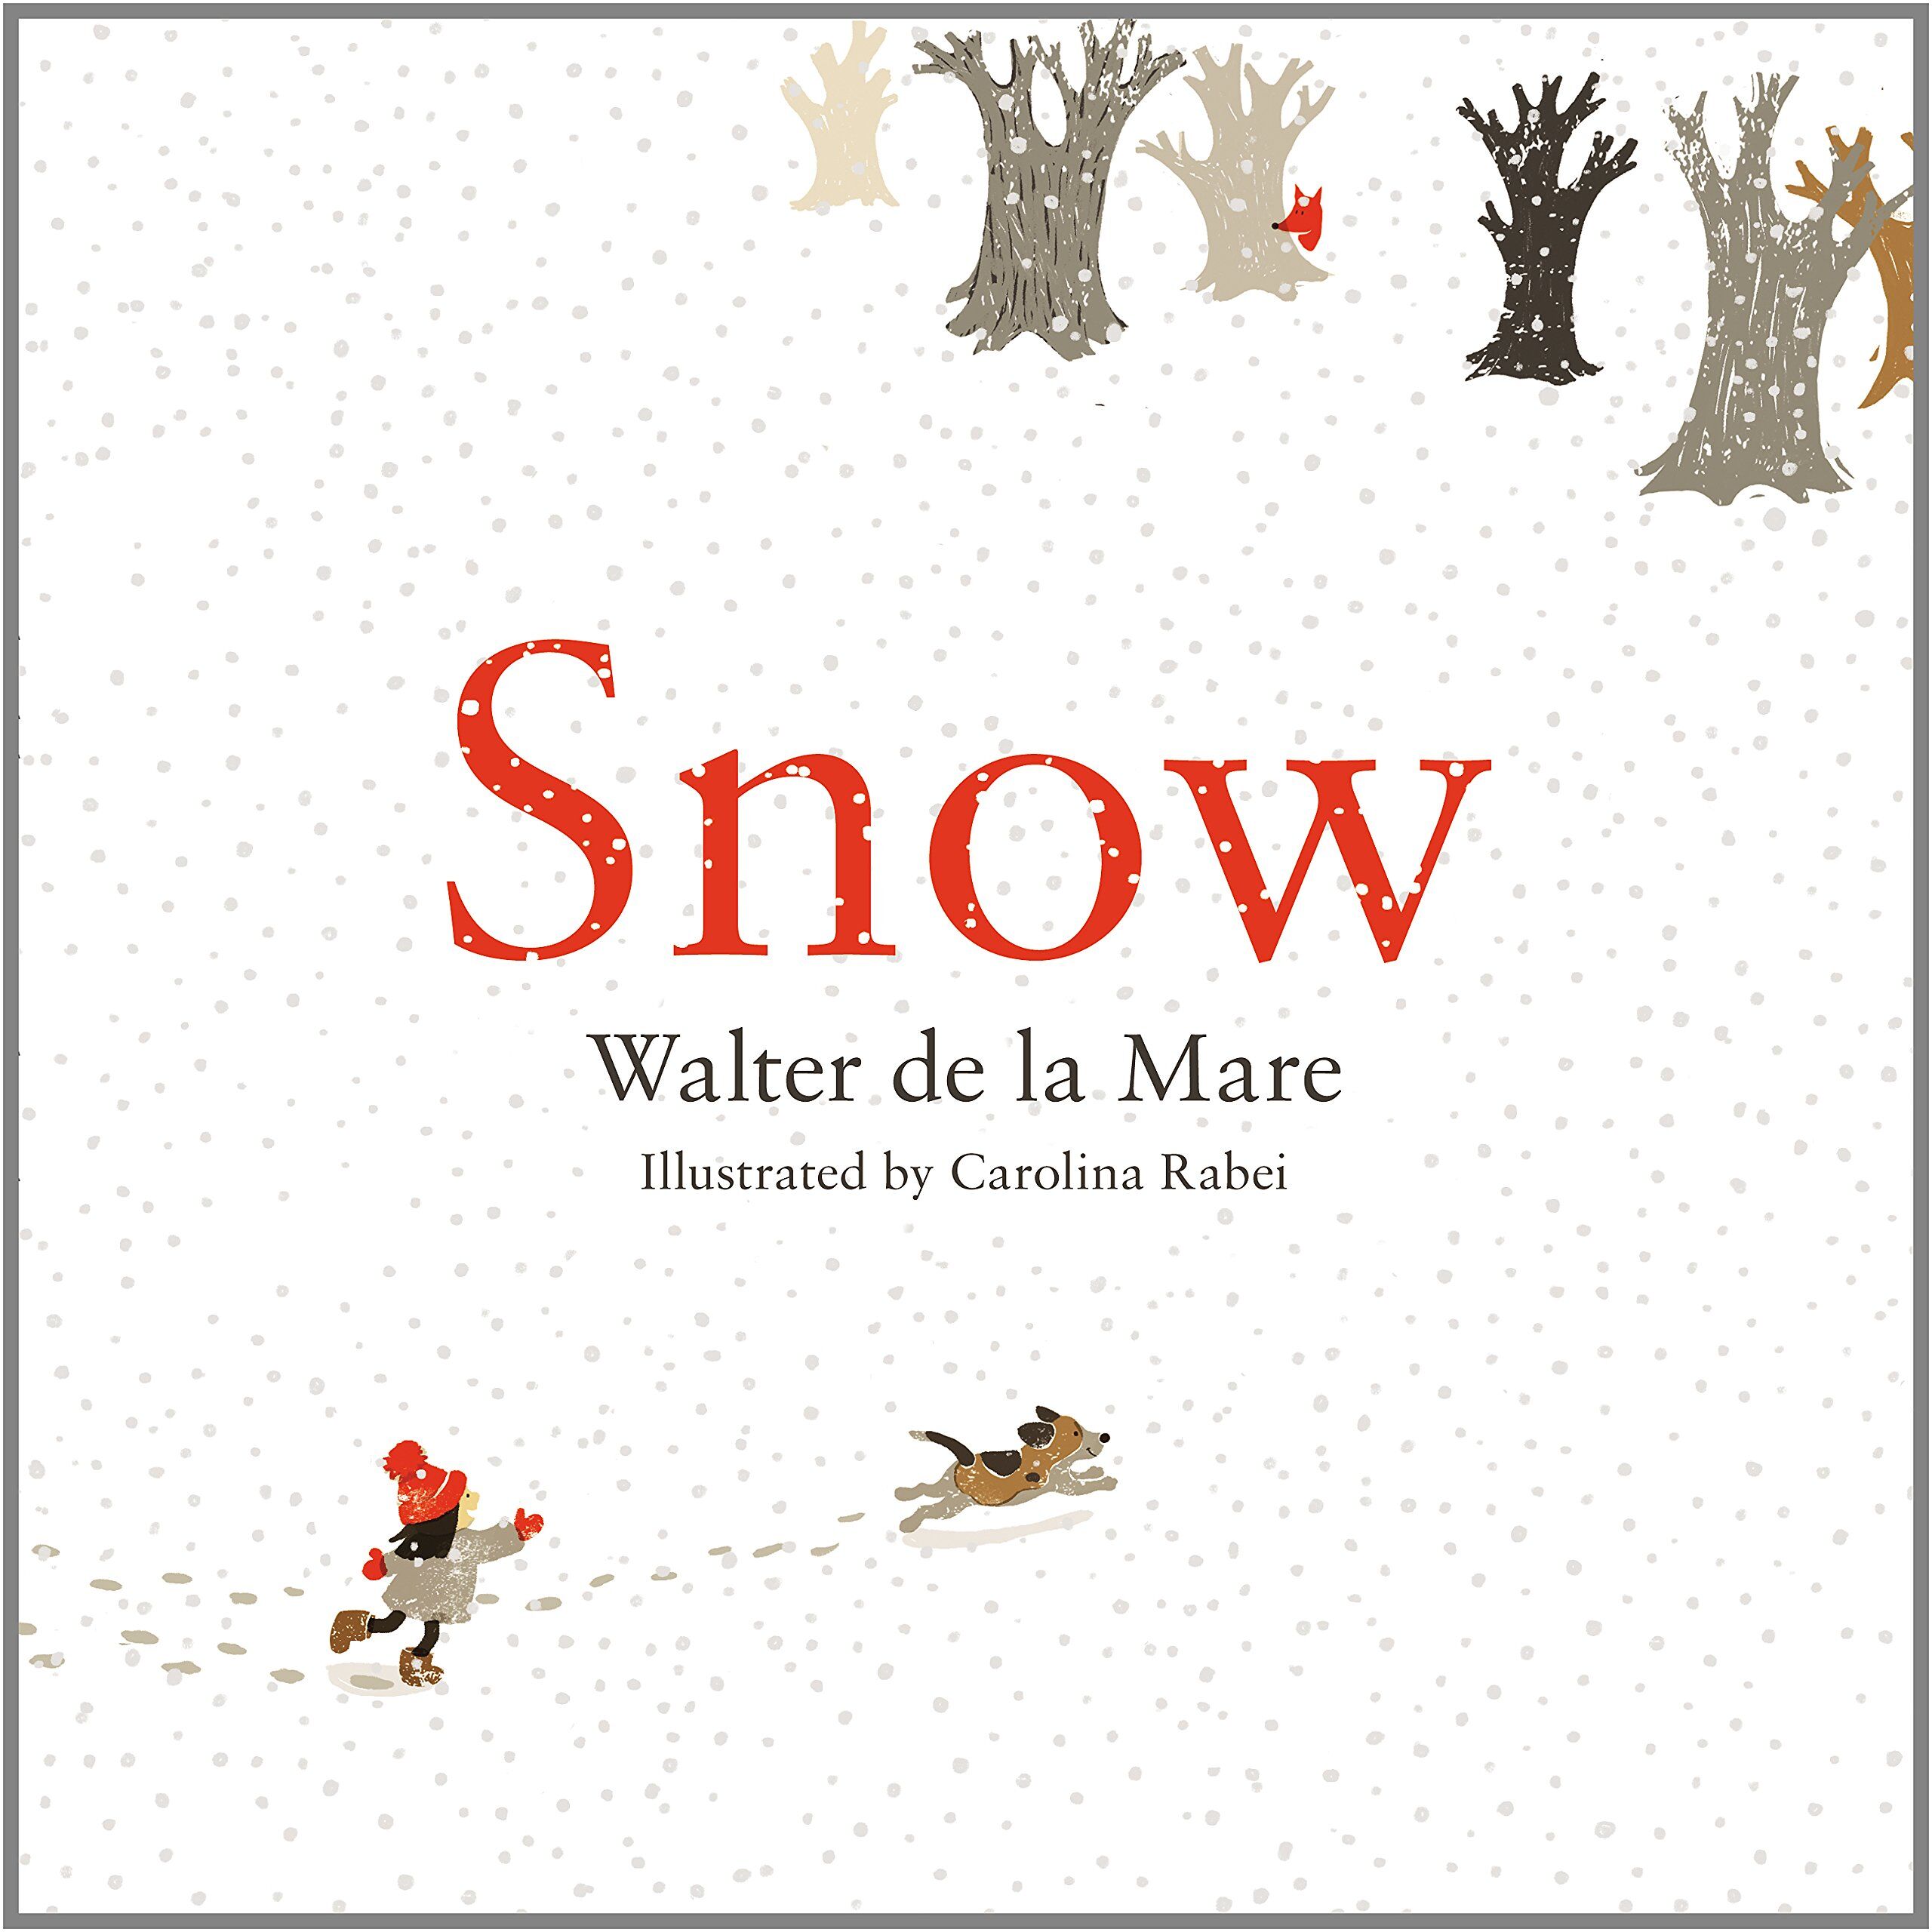 Snow by Walter de la Mare, illustrated by Carolina Rabei